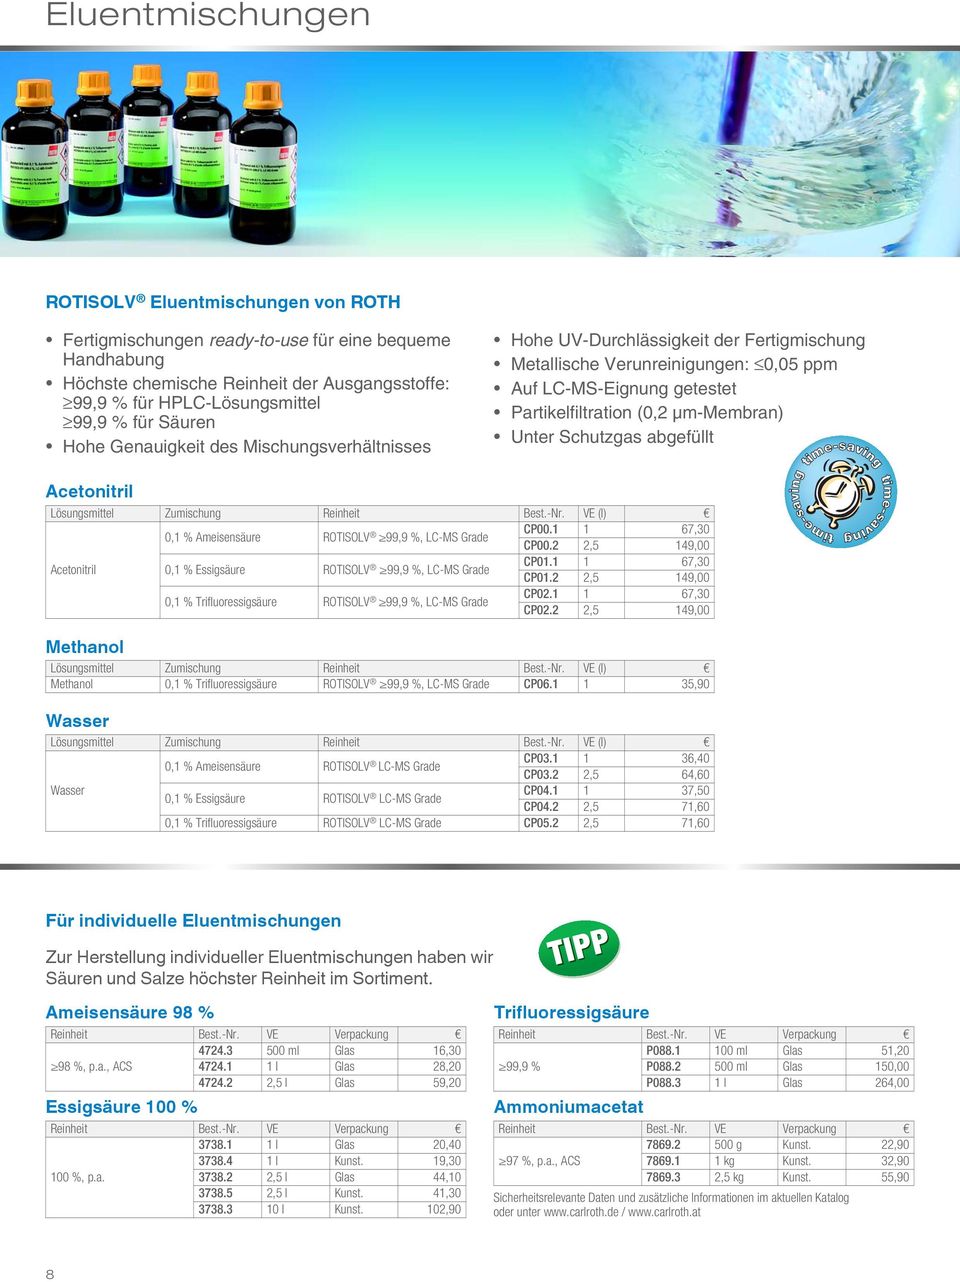 μm-membran) Unter Schutzgas abgefüllt Lösungsmittel Zumischung 0,1 % Ameisensäure ROTISOLV 99,9 %, LC-MS Grade CP00.1 1 67,30 CP00.